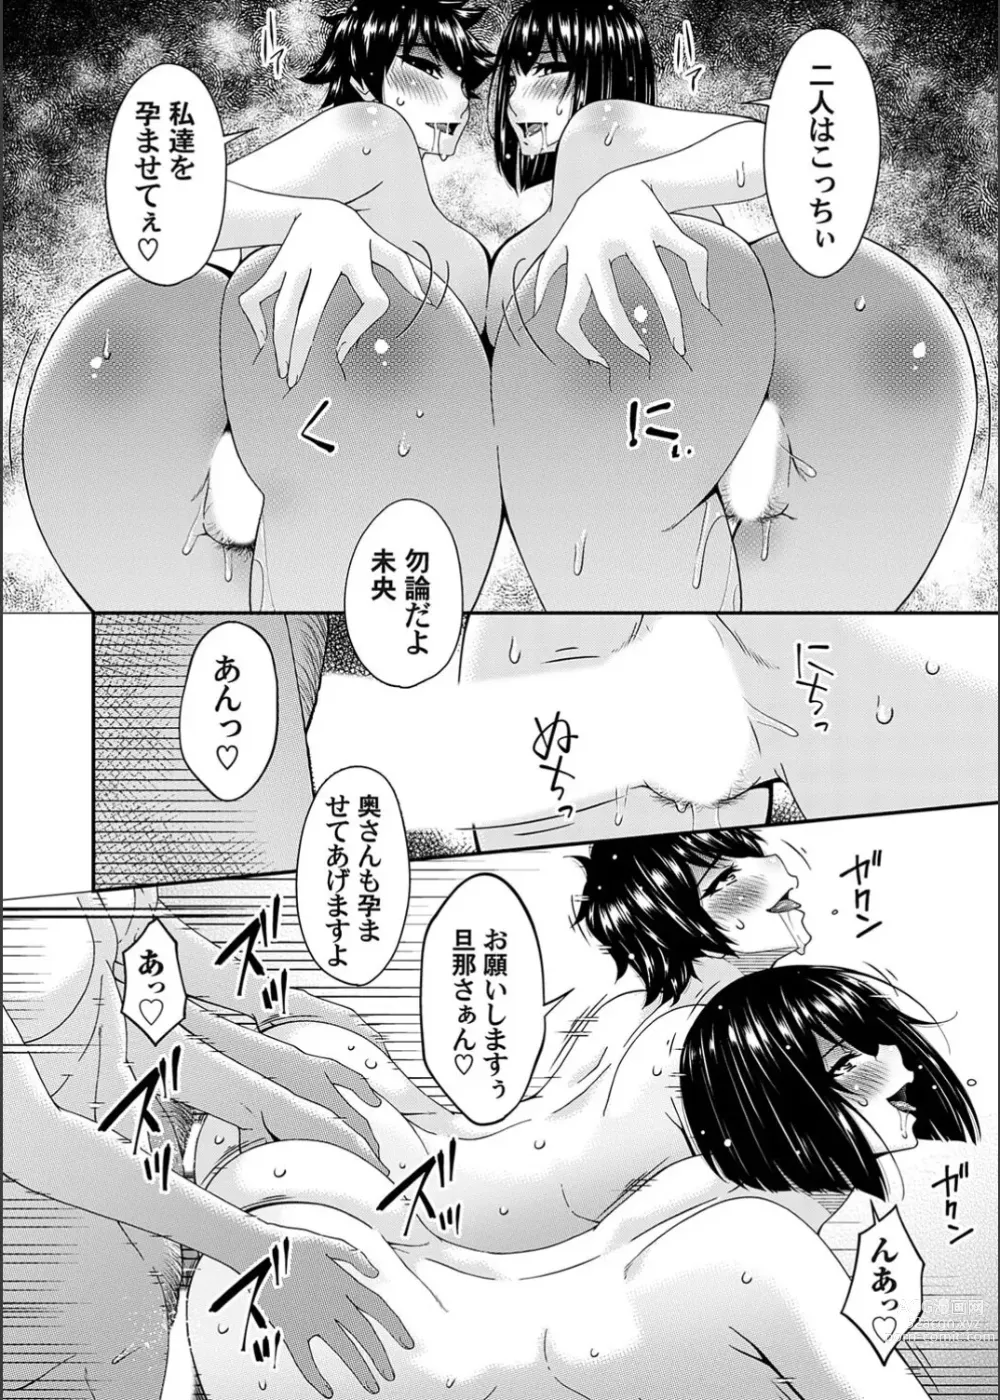 Page 200 of manga Saiin Kazoku